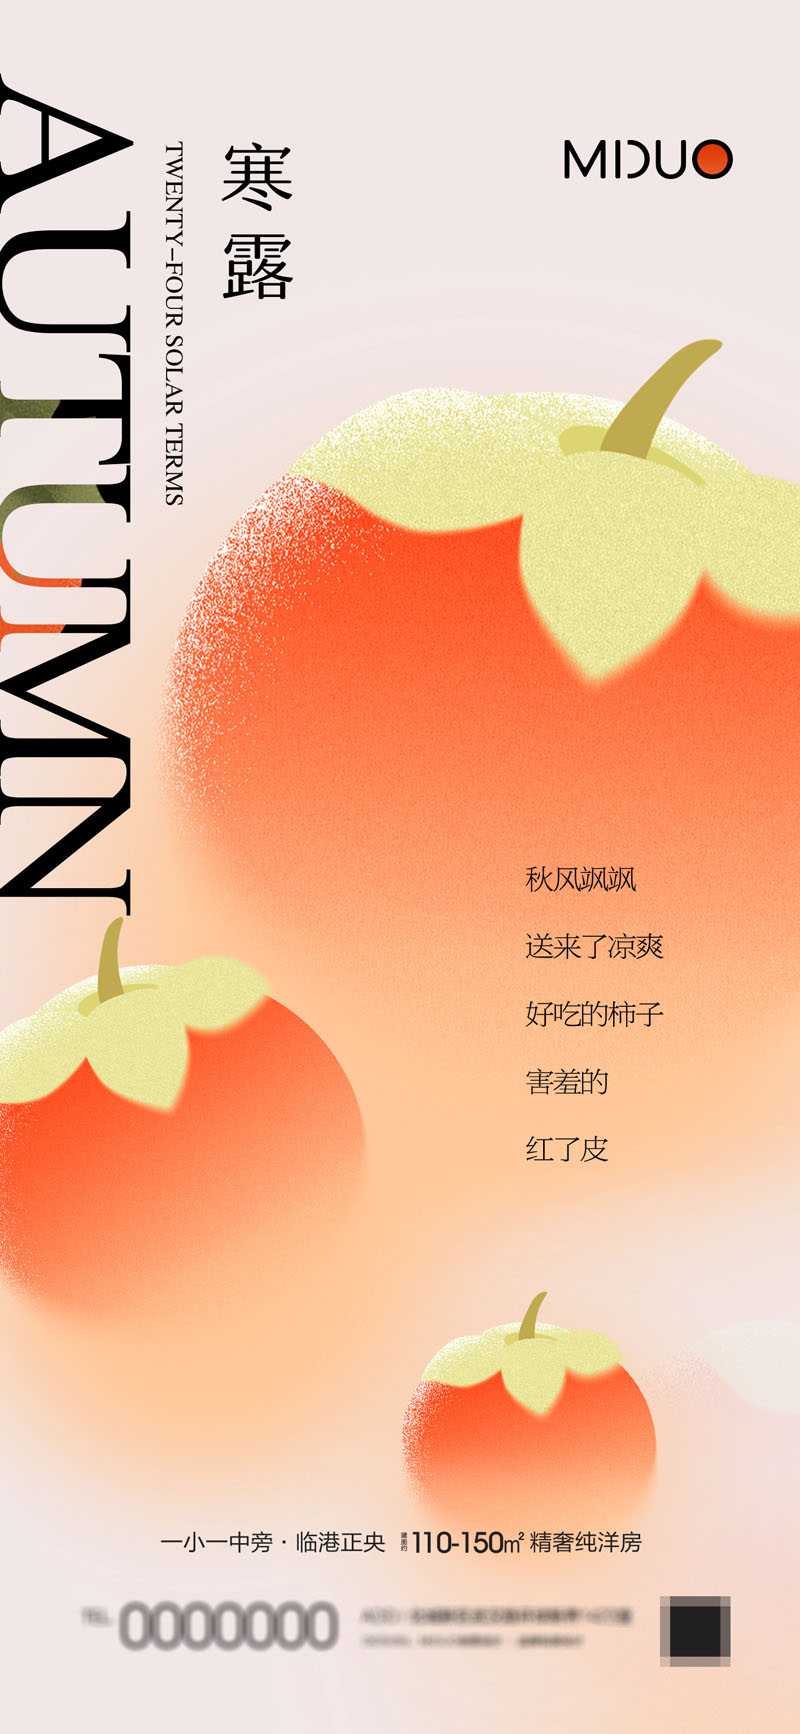 94款中国传统二十四节气之寒露节日海报PSD模板 设计素材 第7张